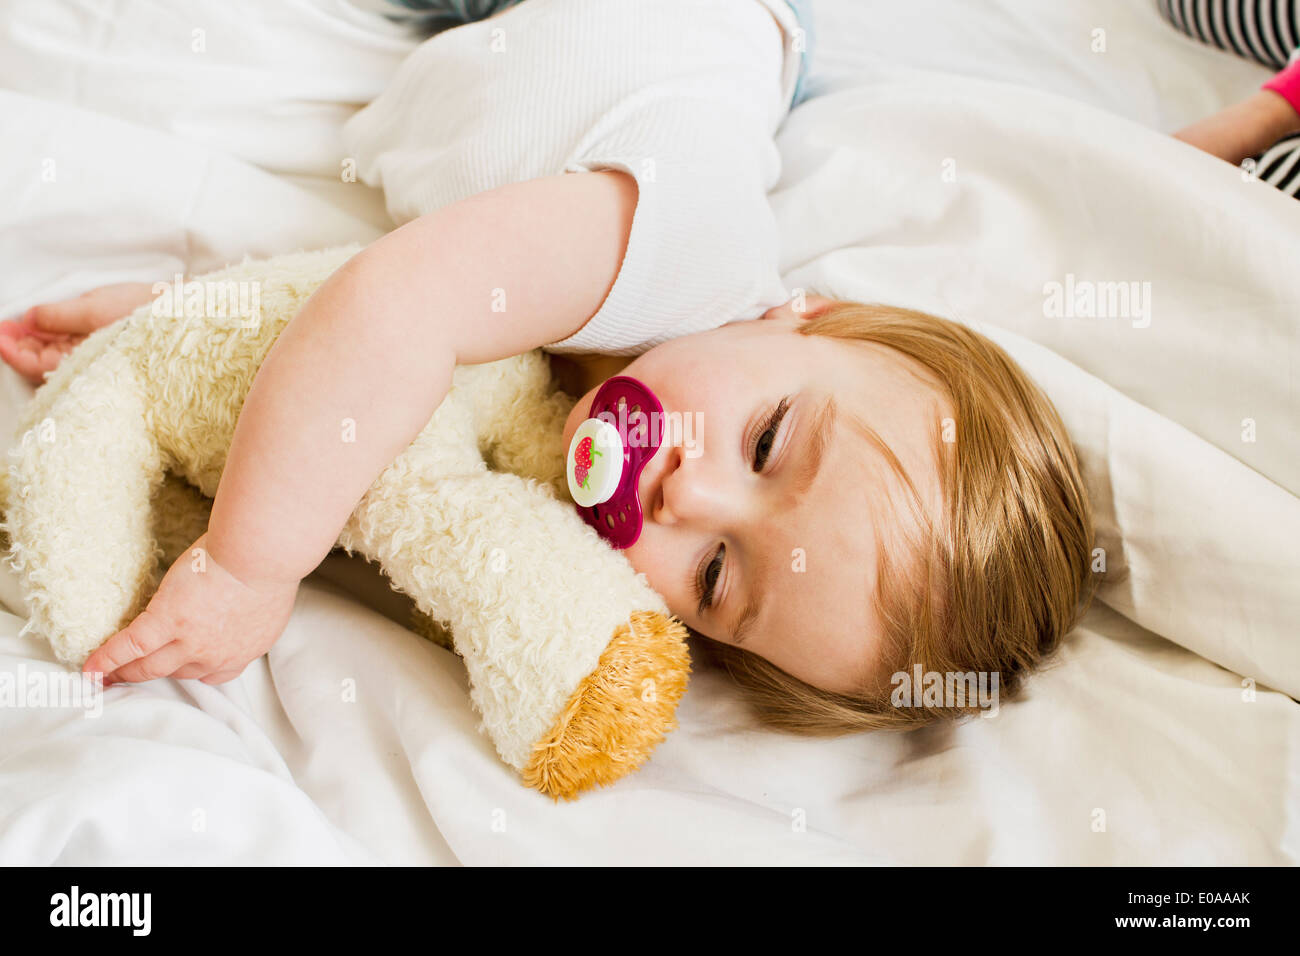 Baby girl asleep with teddy bear Stock Photo